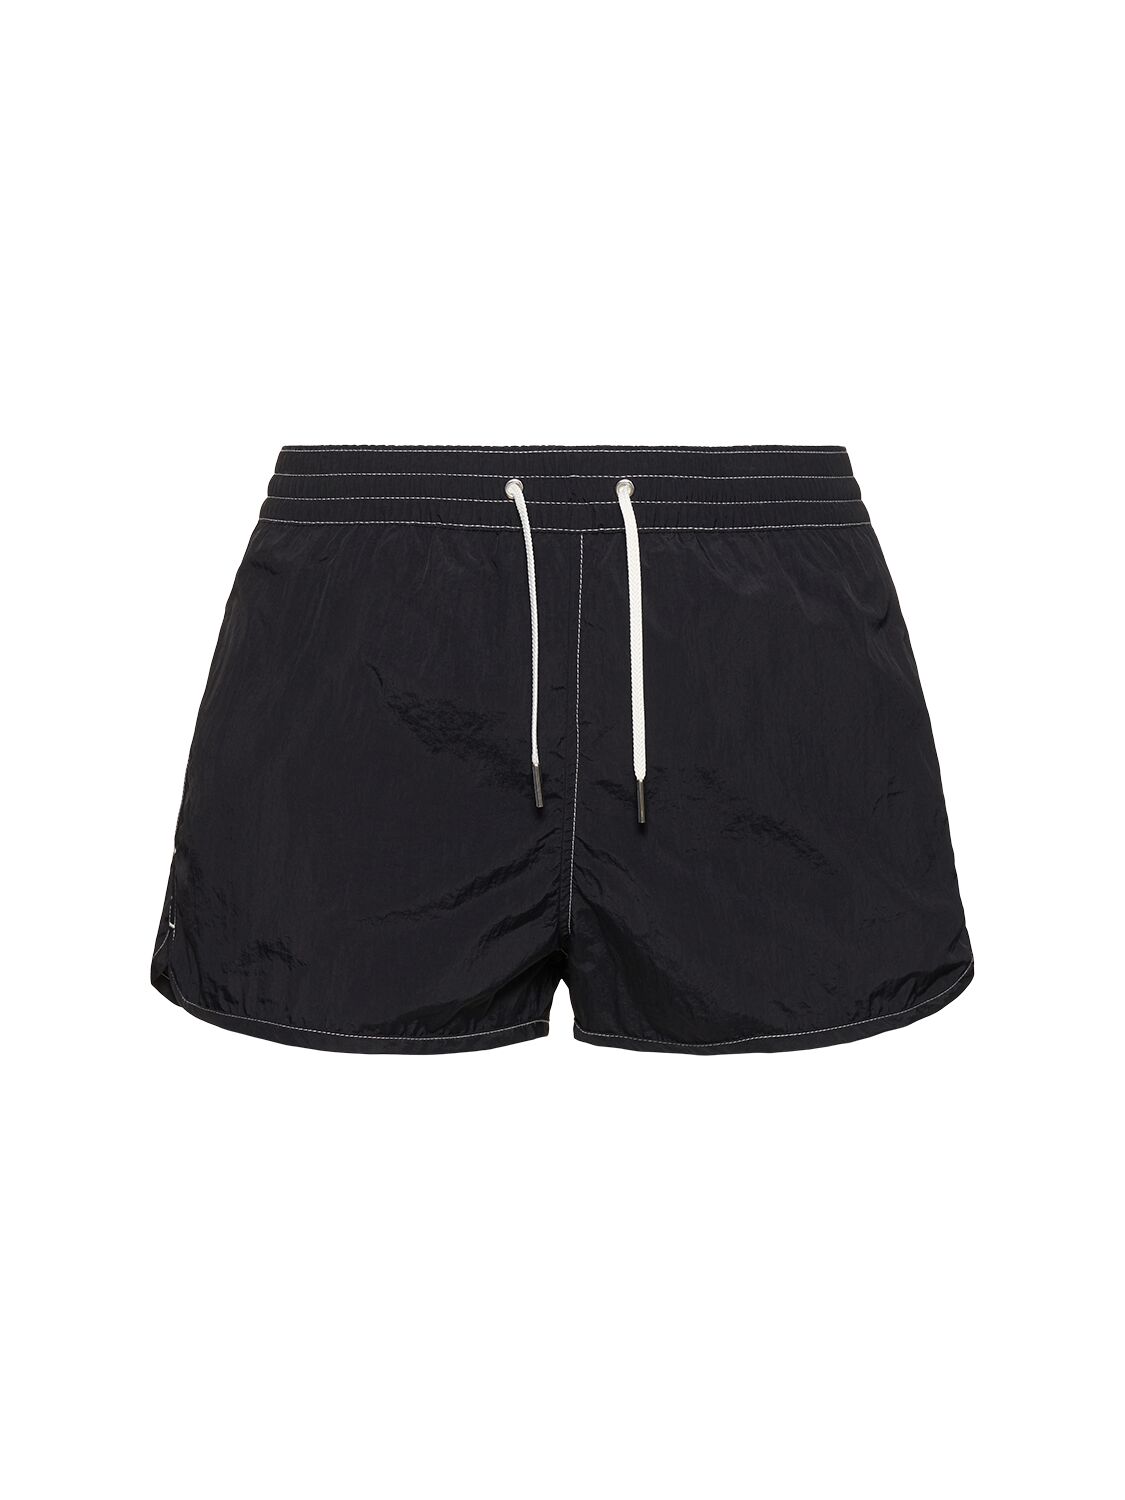 Image of Contrast Stitching Nylon Swim Shorts